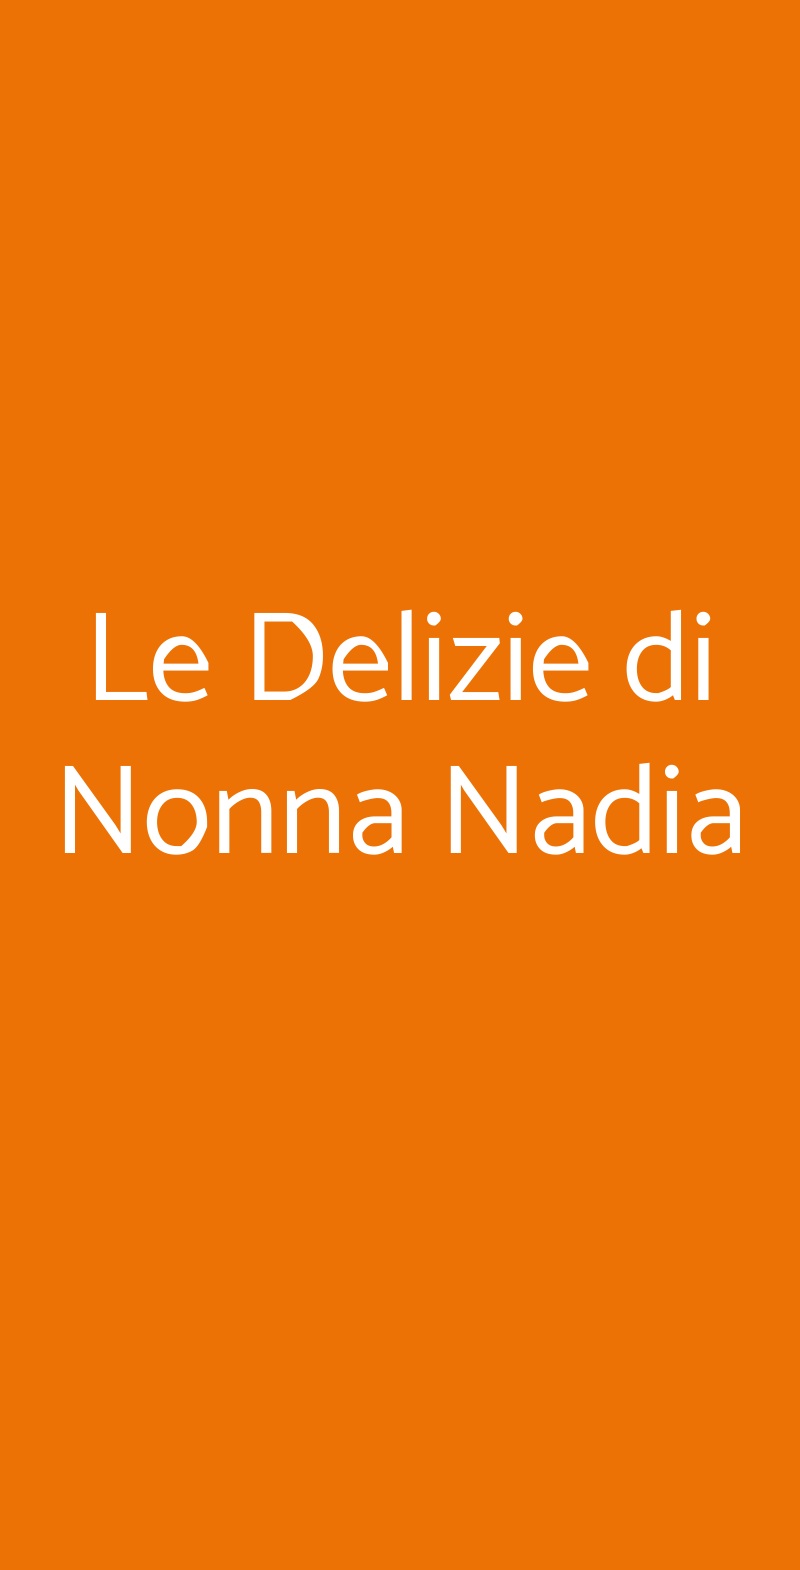 Le Delizie di Nonna Nadia Genova menù 1 pagina